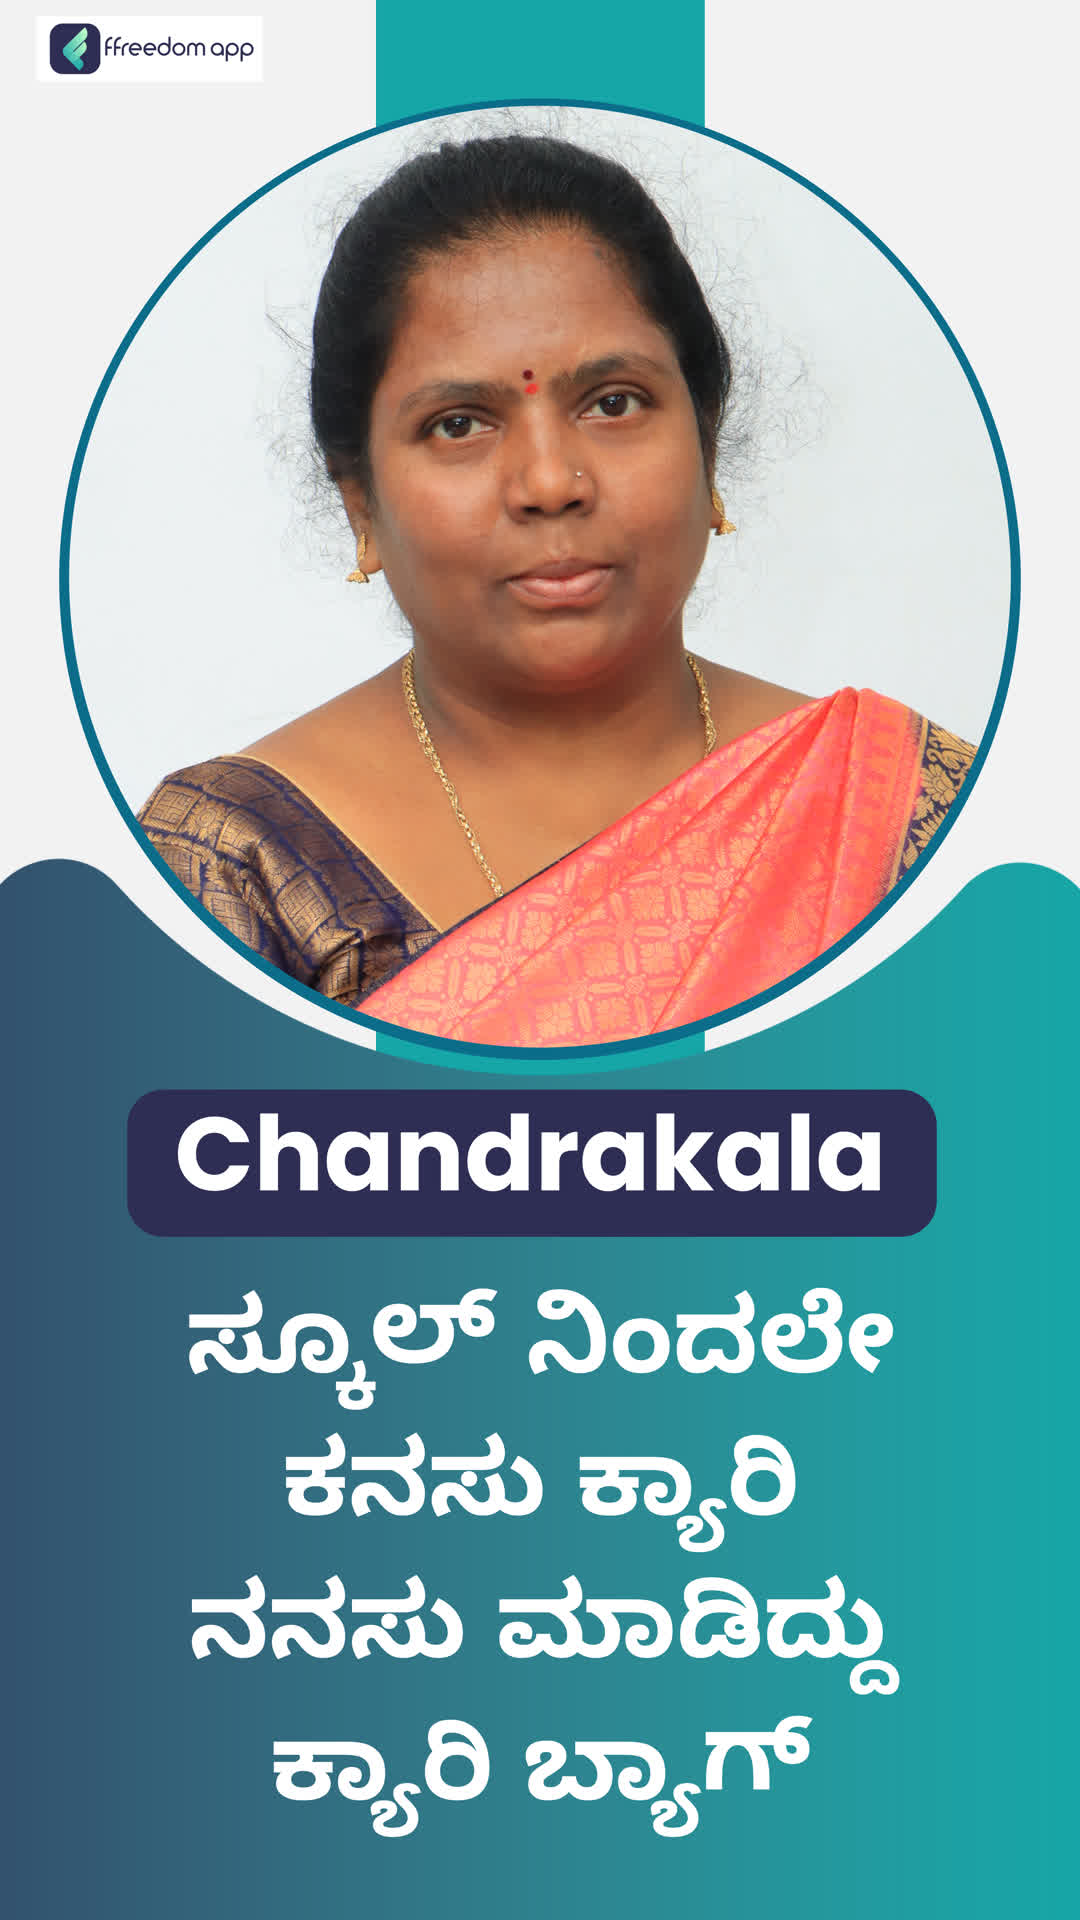 Chandrakala s's Honest Review of ffreedom app - Bengaluru City ,Karnataka